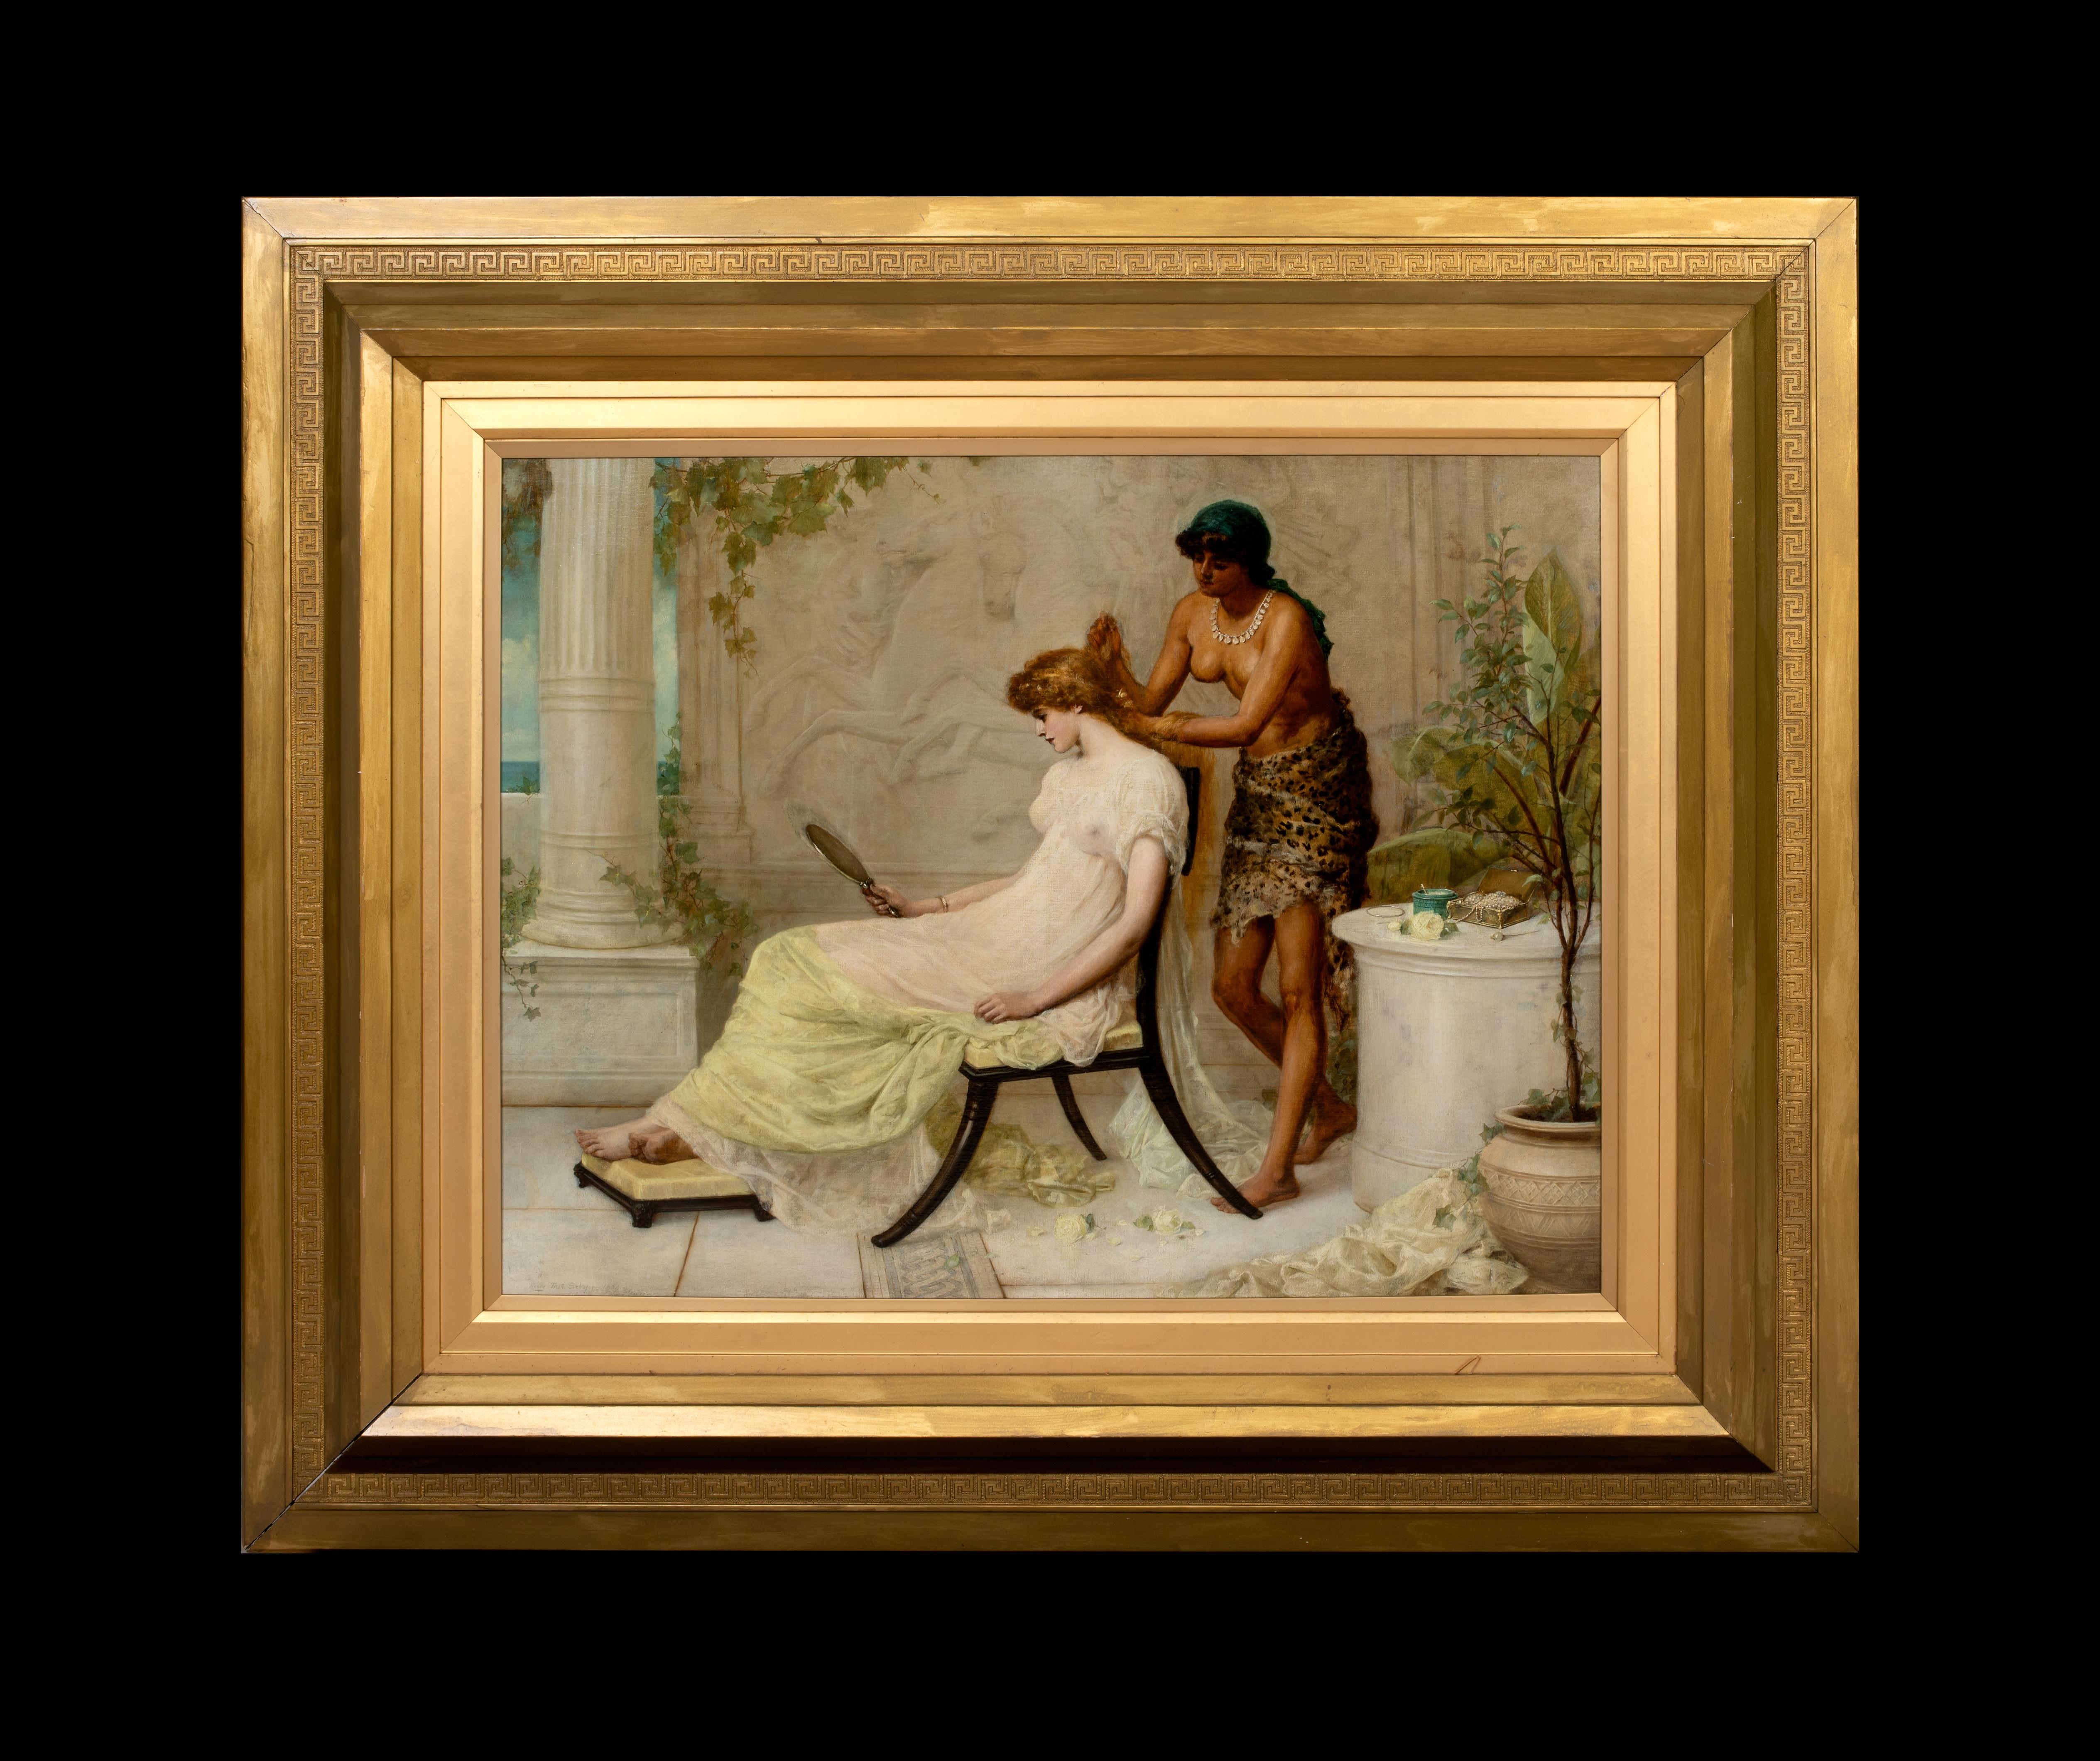 Vanity, daté de 1885  par Henry Thomas SCHAFER (1815-1873), jeune fille et esclave - Painting de Henri Schäfer